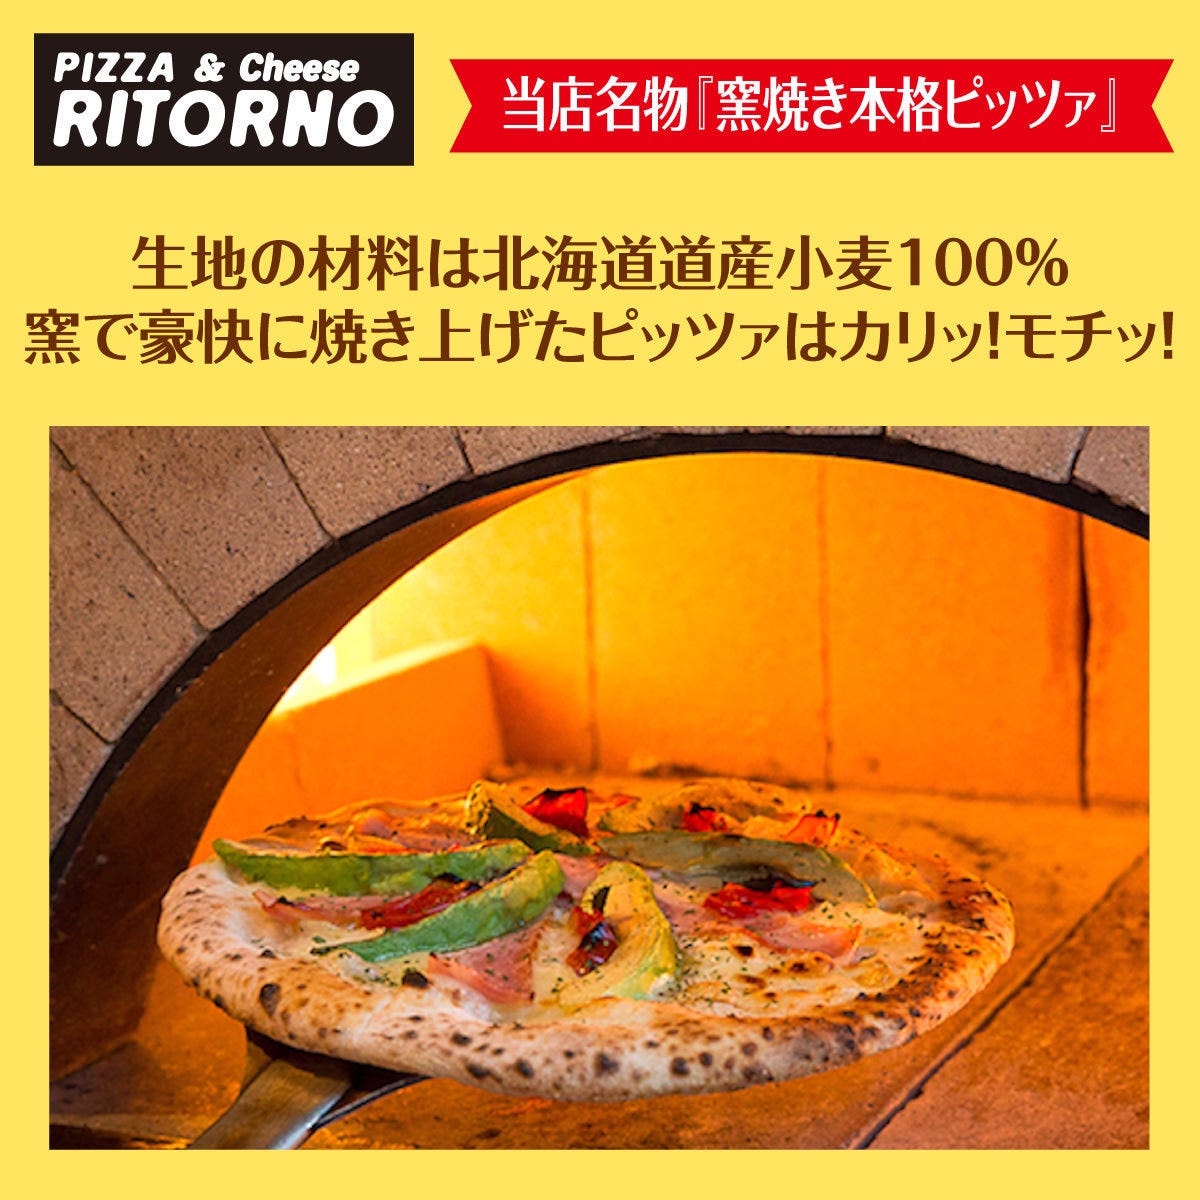 PIZZA & Cheese RITORNO ‐リトルノ‐